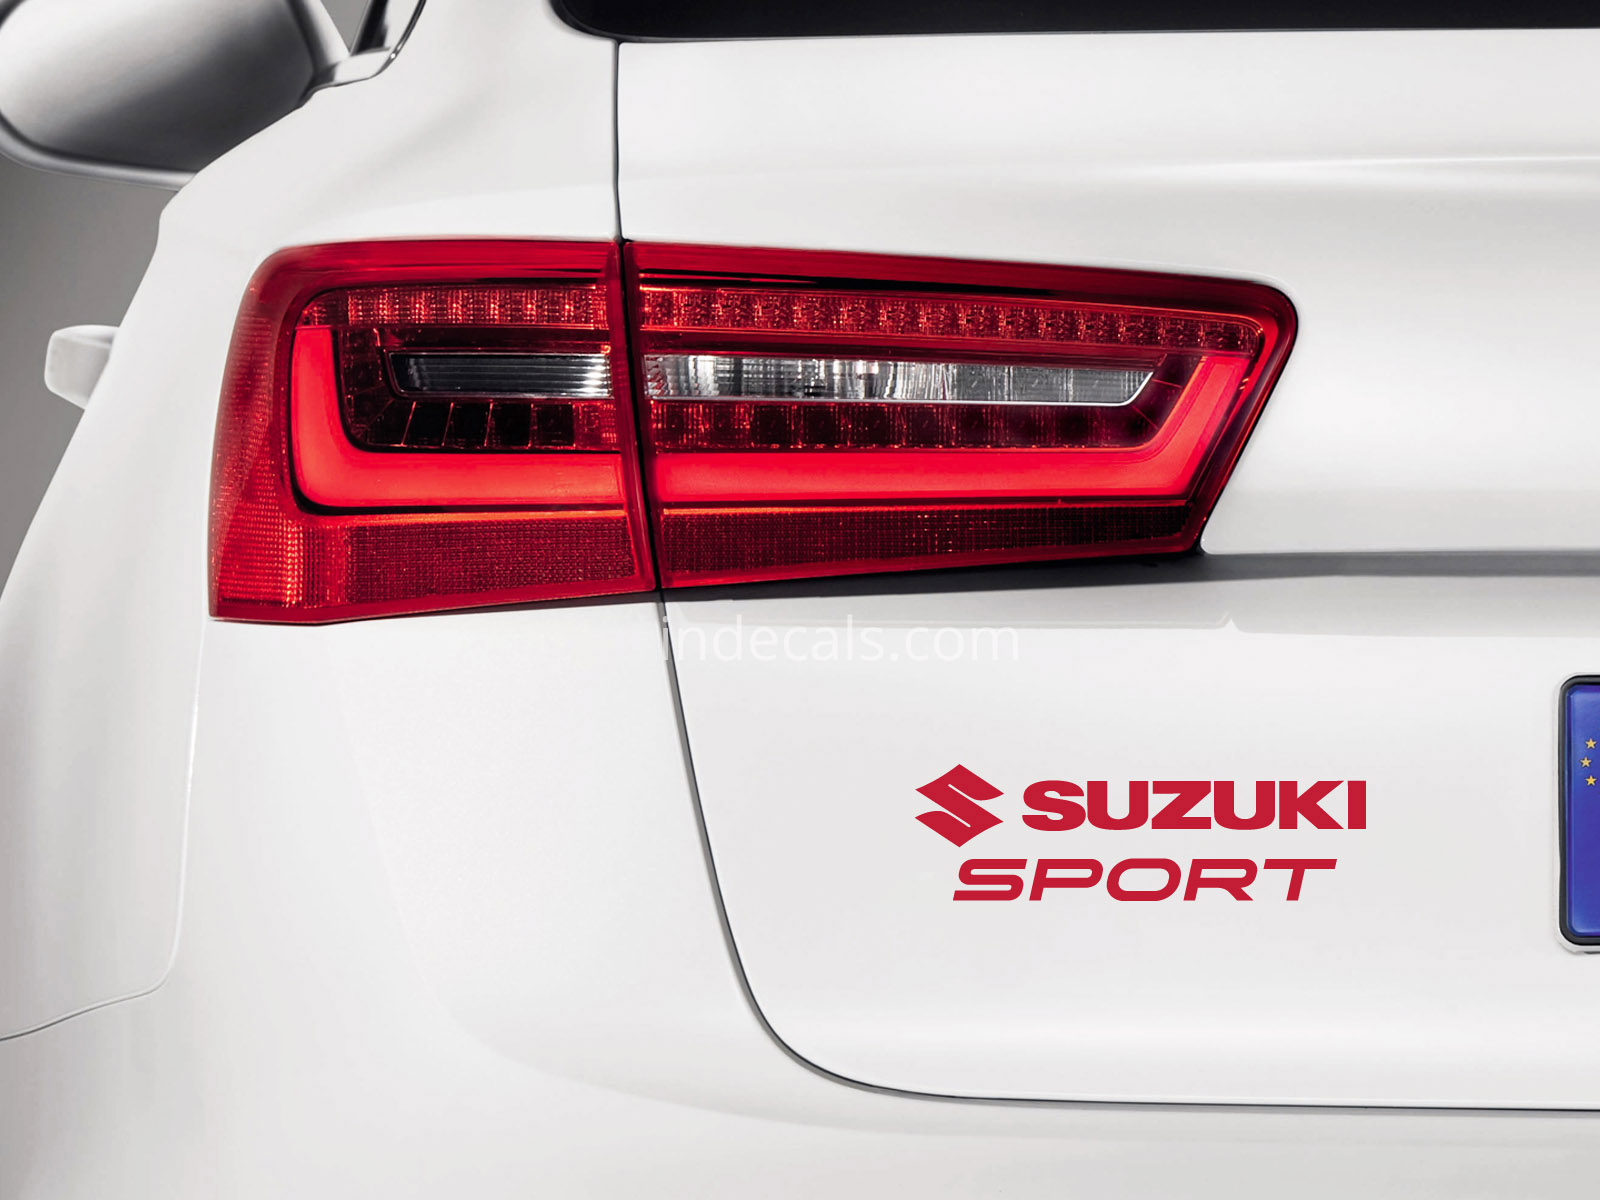 1 x Suzuki Sports Sticker for Trunk - Red